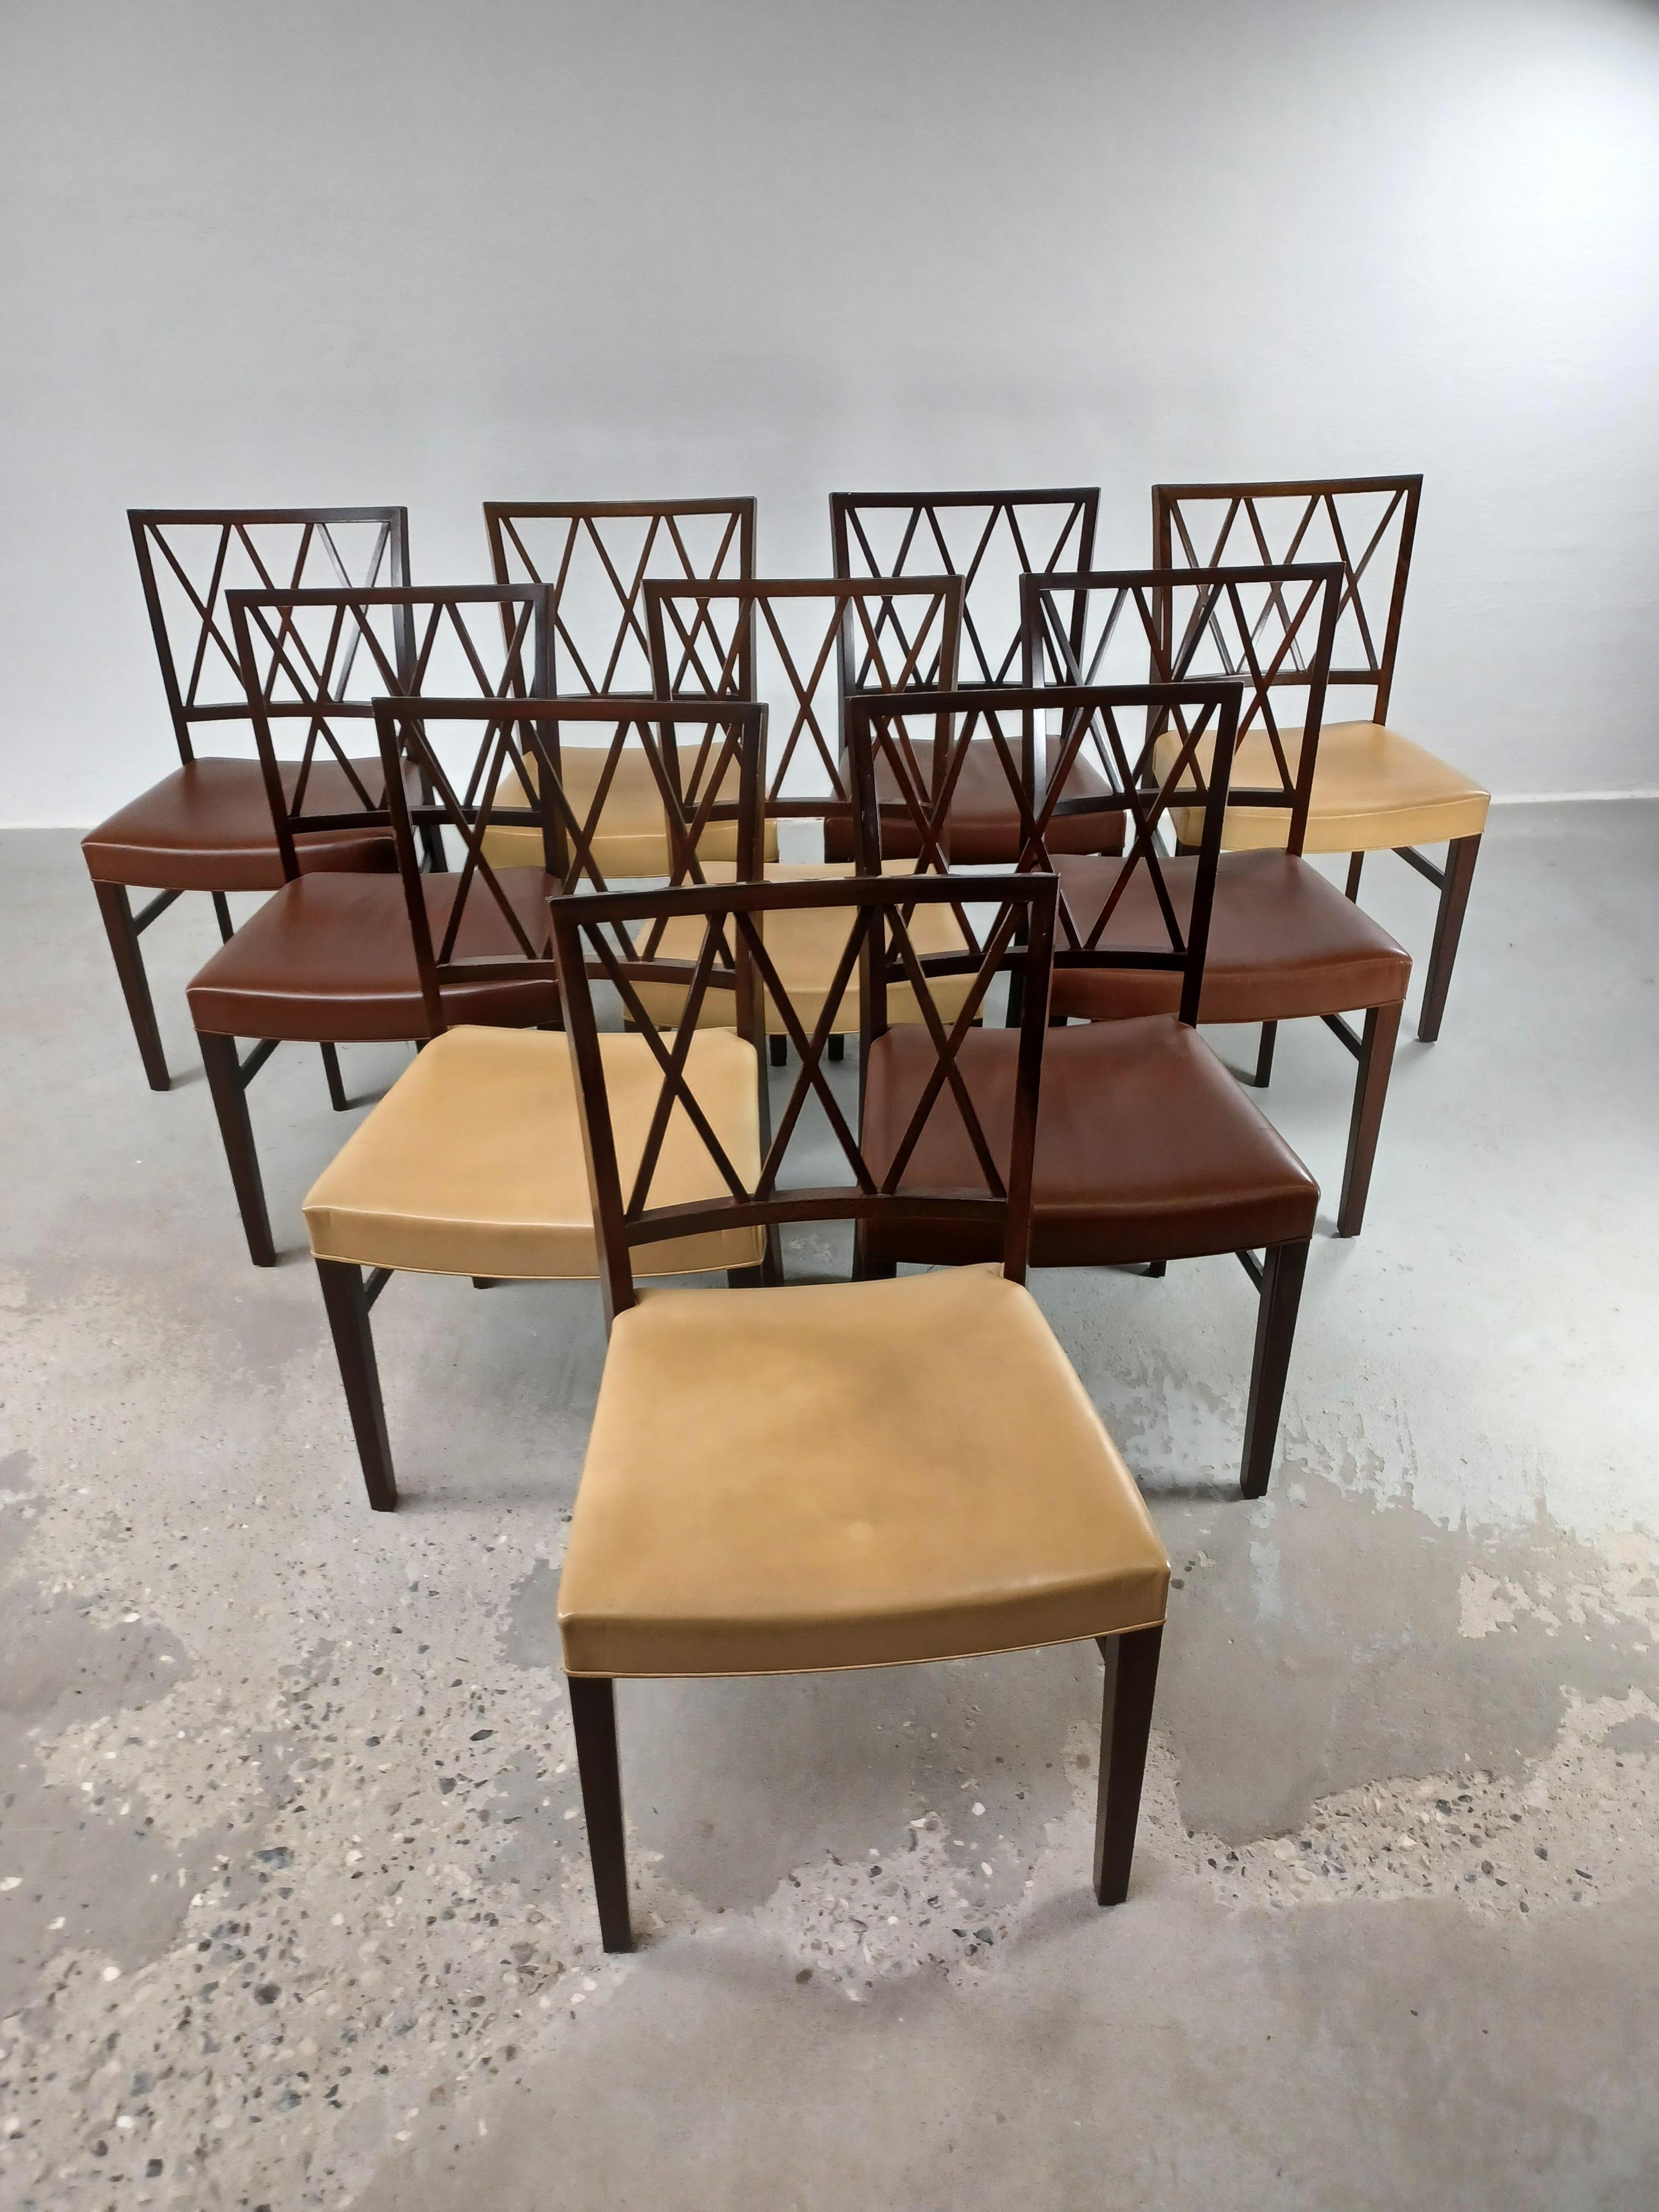 Satz von zehn vollständig restaurierten dänischen Ole Wanscher-Esszimmerstühlen, einschließlich individueller Neupolsterung.

Die Stühle mit ihren soliden, aber gleichzeitig leichten und eleganten Linien und kleinen Details zeigen Ole Wanschers